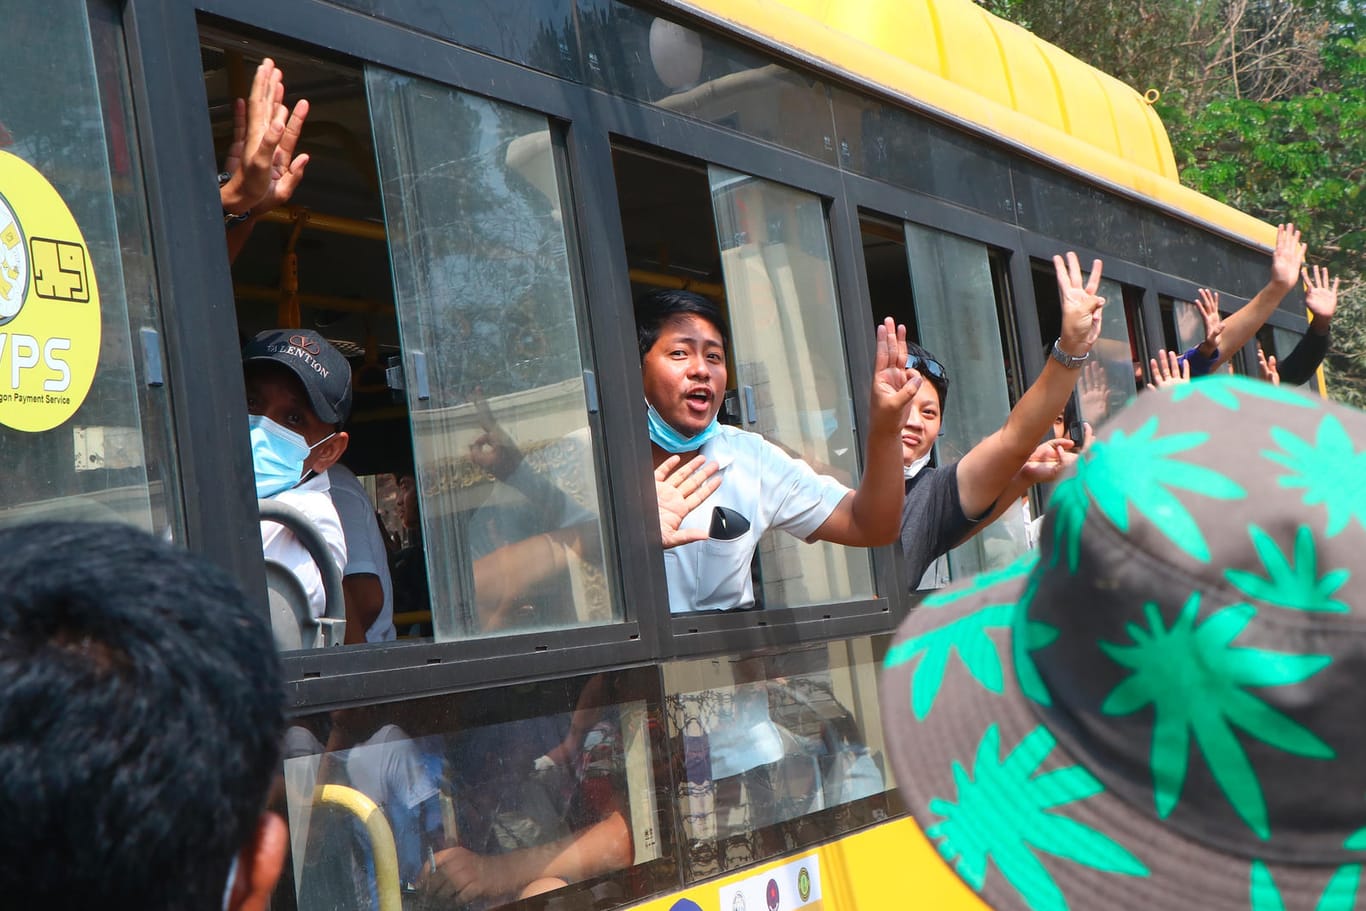 Demonstranten aus Myanmar auf dem Weg raus aus dem Gefängnis: Sie zeigen den Drei-Finger-Gruß als Zeichen des Widerstands gegen die Militärjunta.